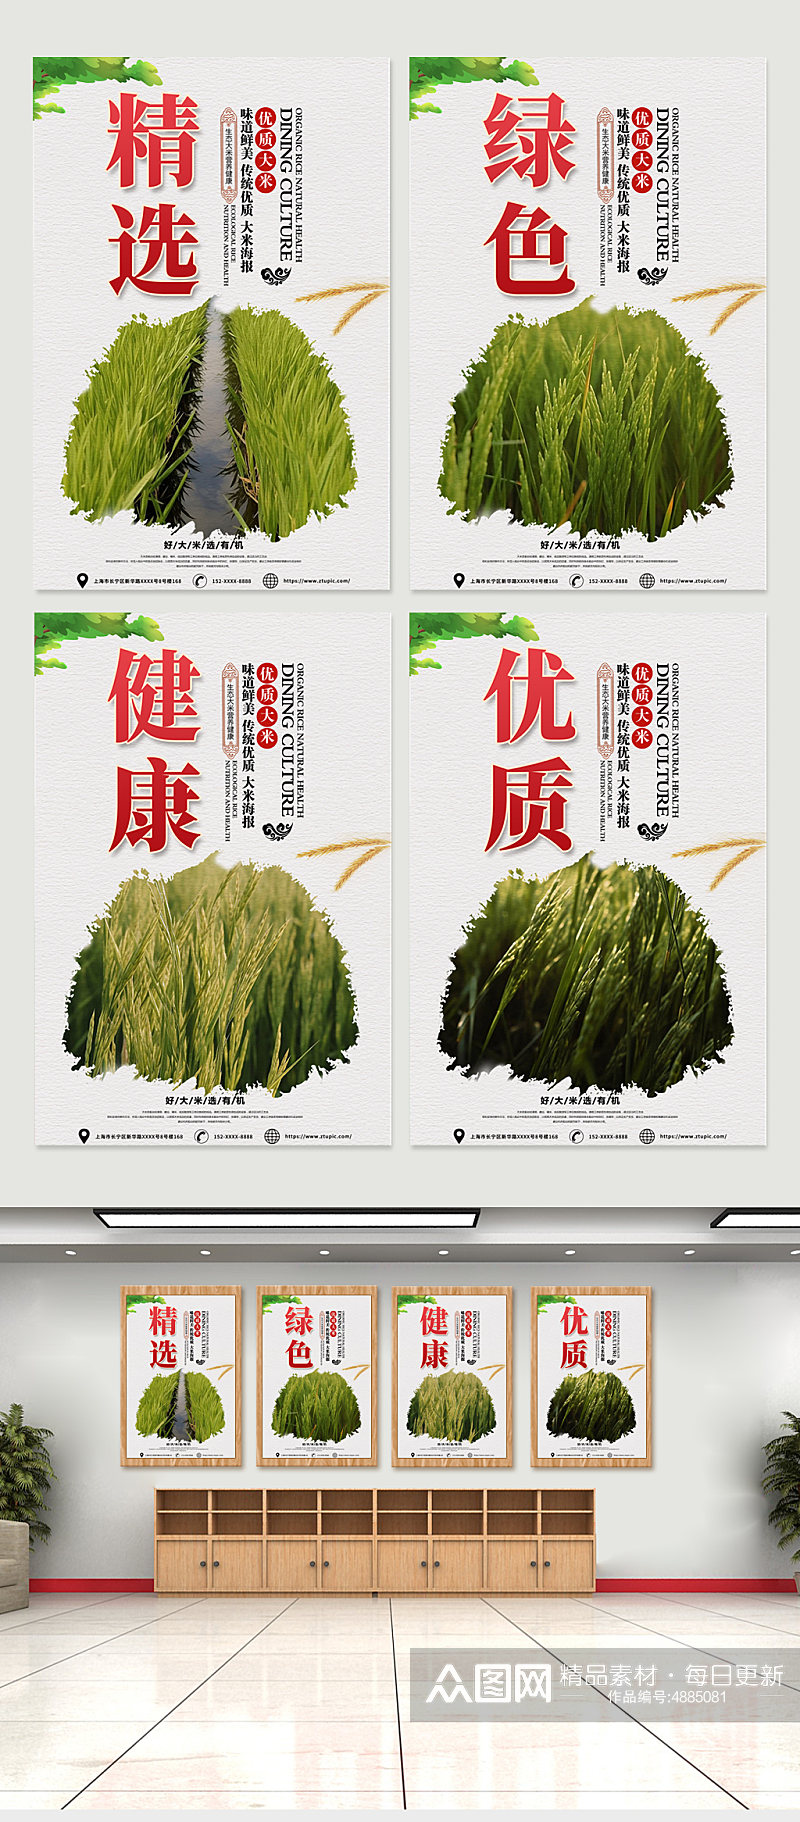 高端水稻大米绿色农产品农业农耕系列海报素材